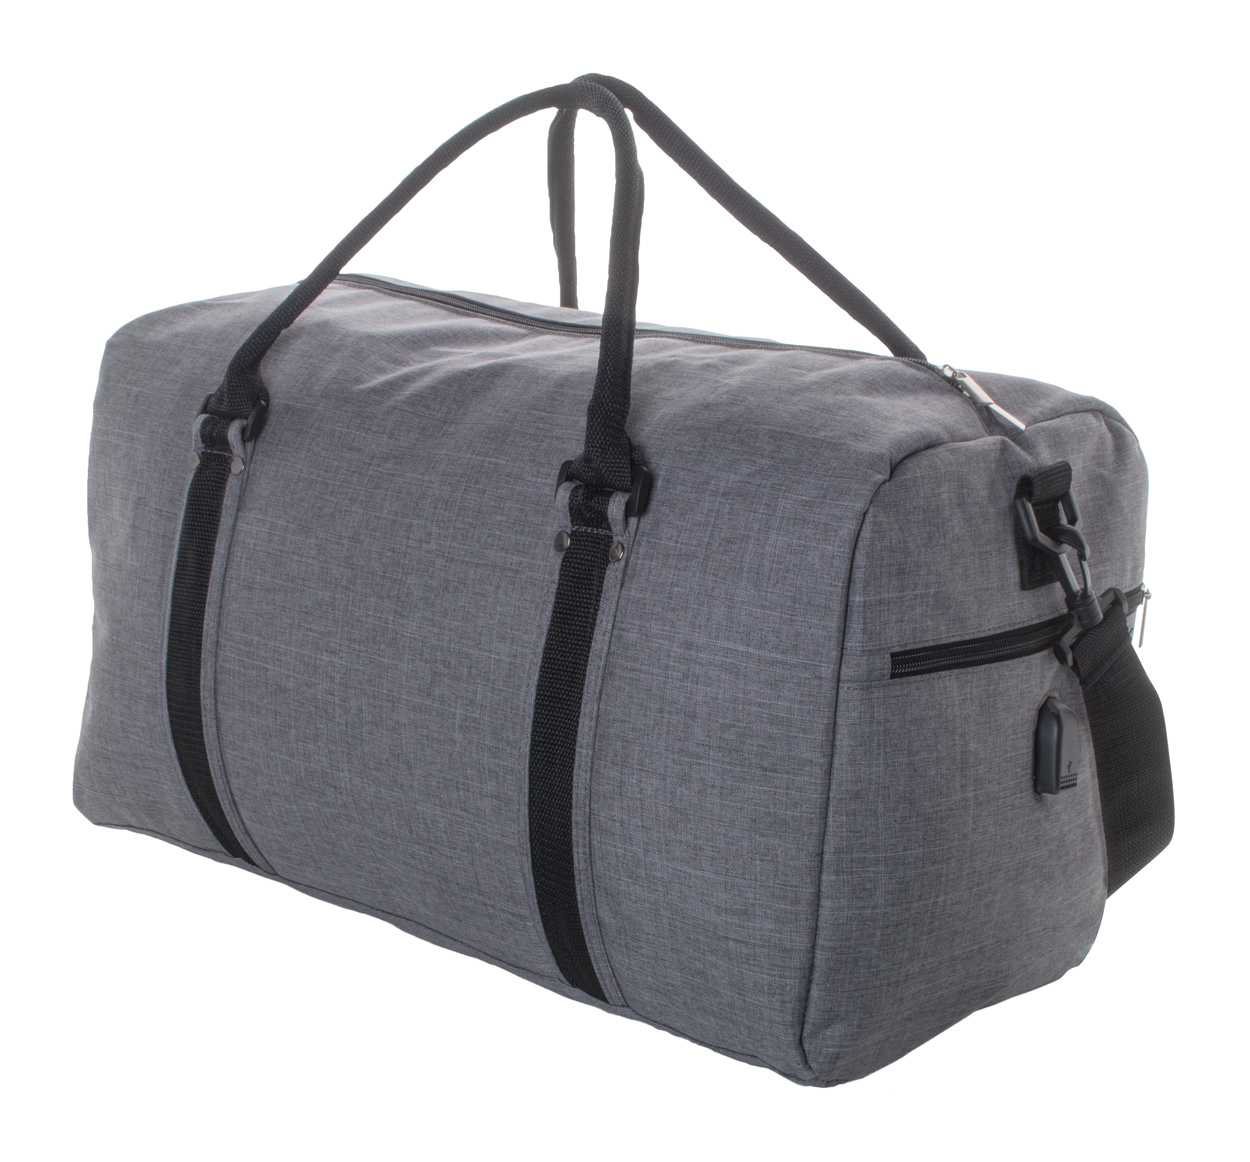 Polyesterová sportovní taška DONATOX - šedý melír